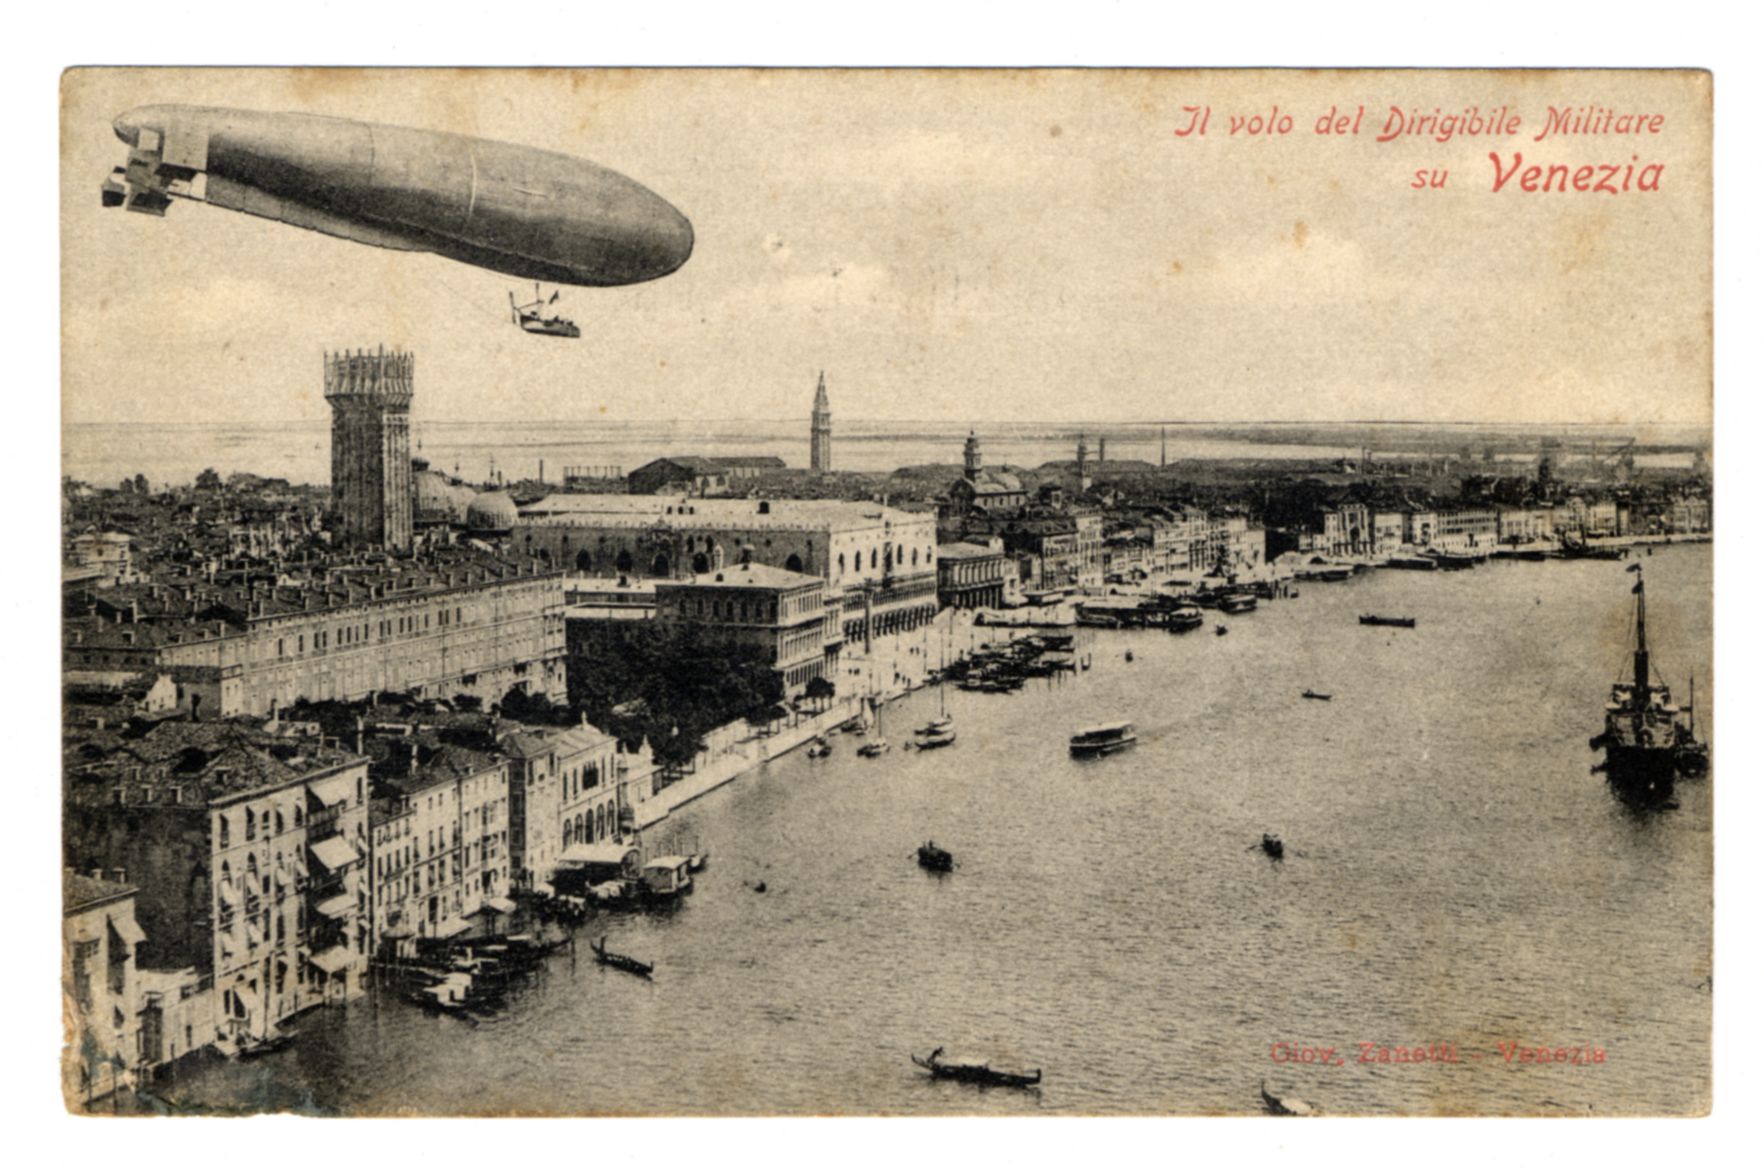 Fotografo non identificato, Il volo del dirigibile militare su Venezia 2 Settembre 1910, 11910, fotografia analogica, FFC042817.